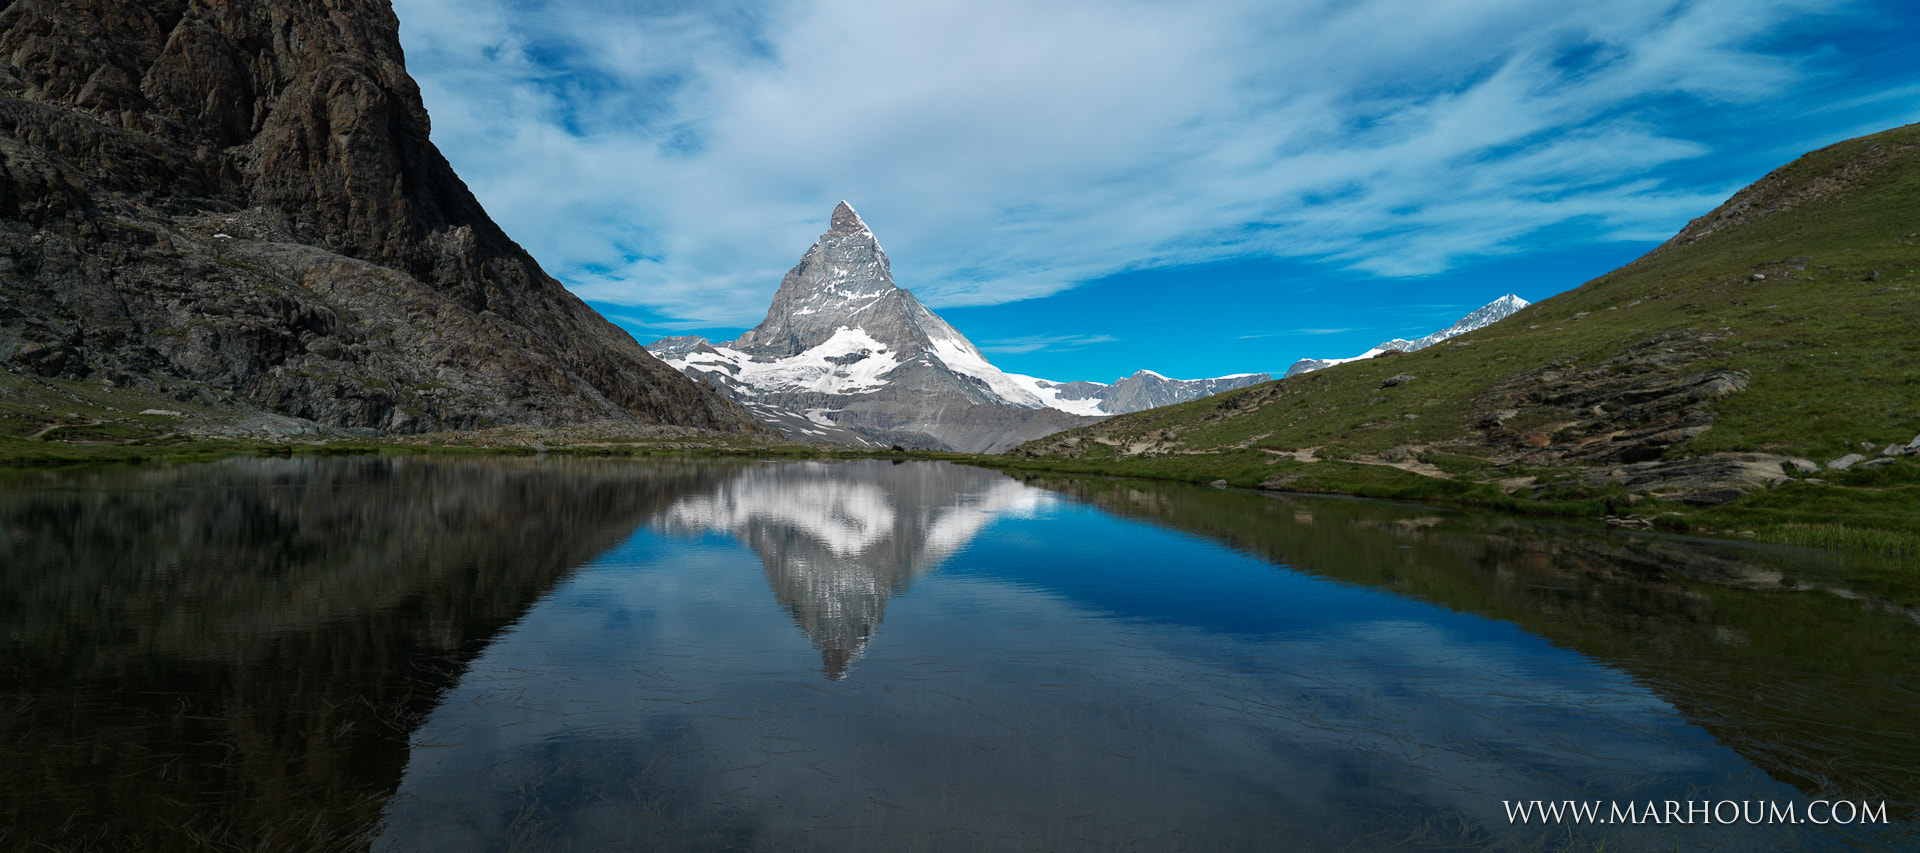 Hasselblad H4D-31 + HCD 28 sample photo. Matterhorn photography